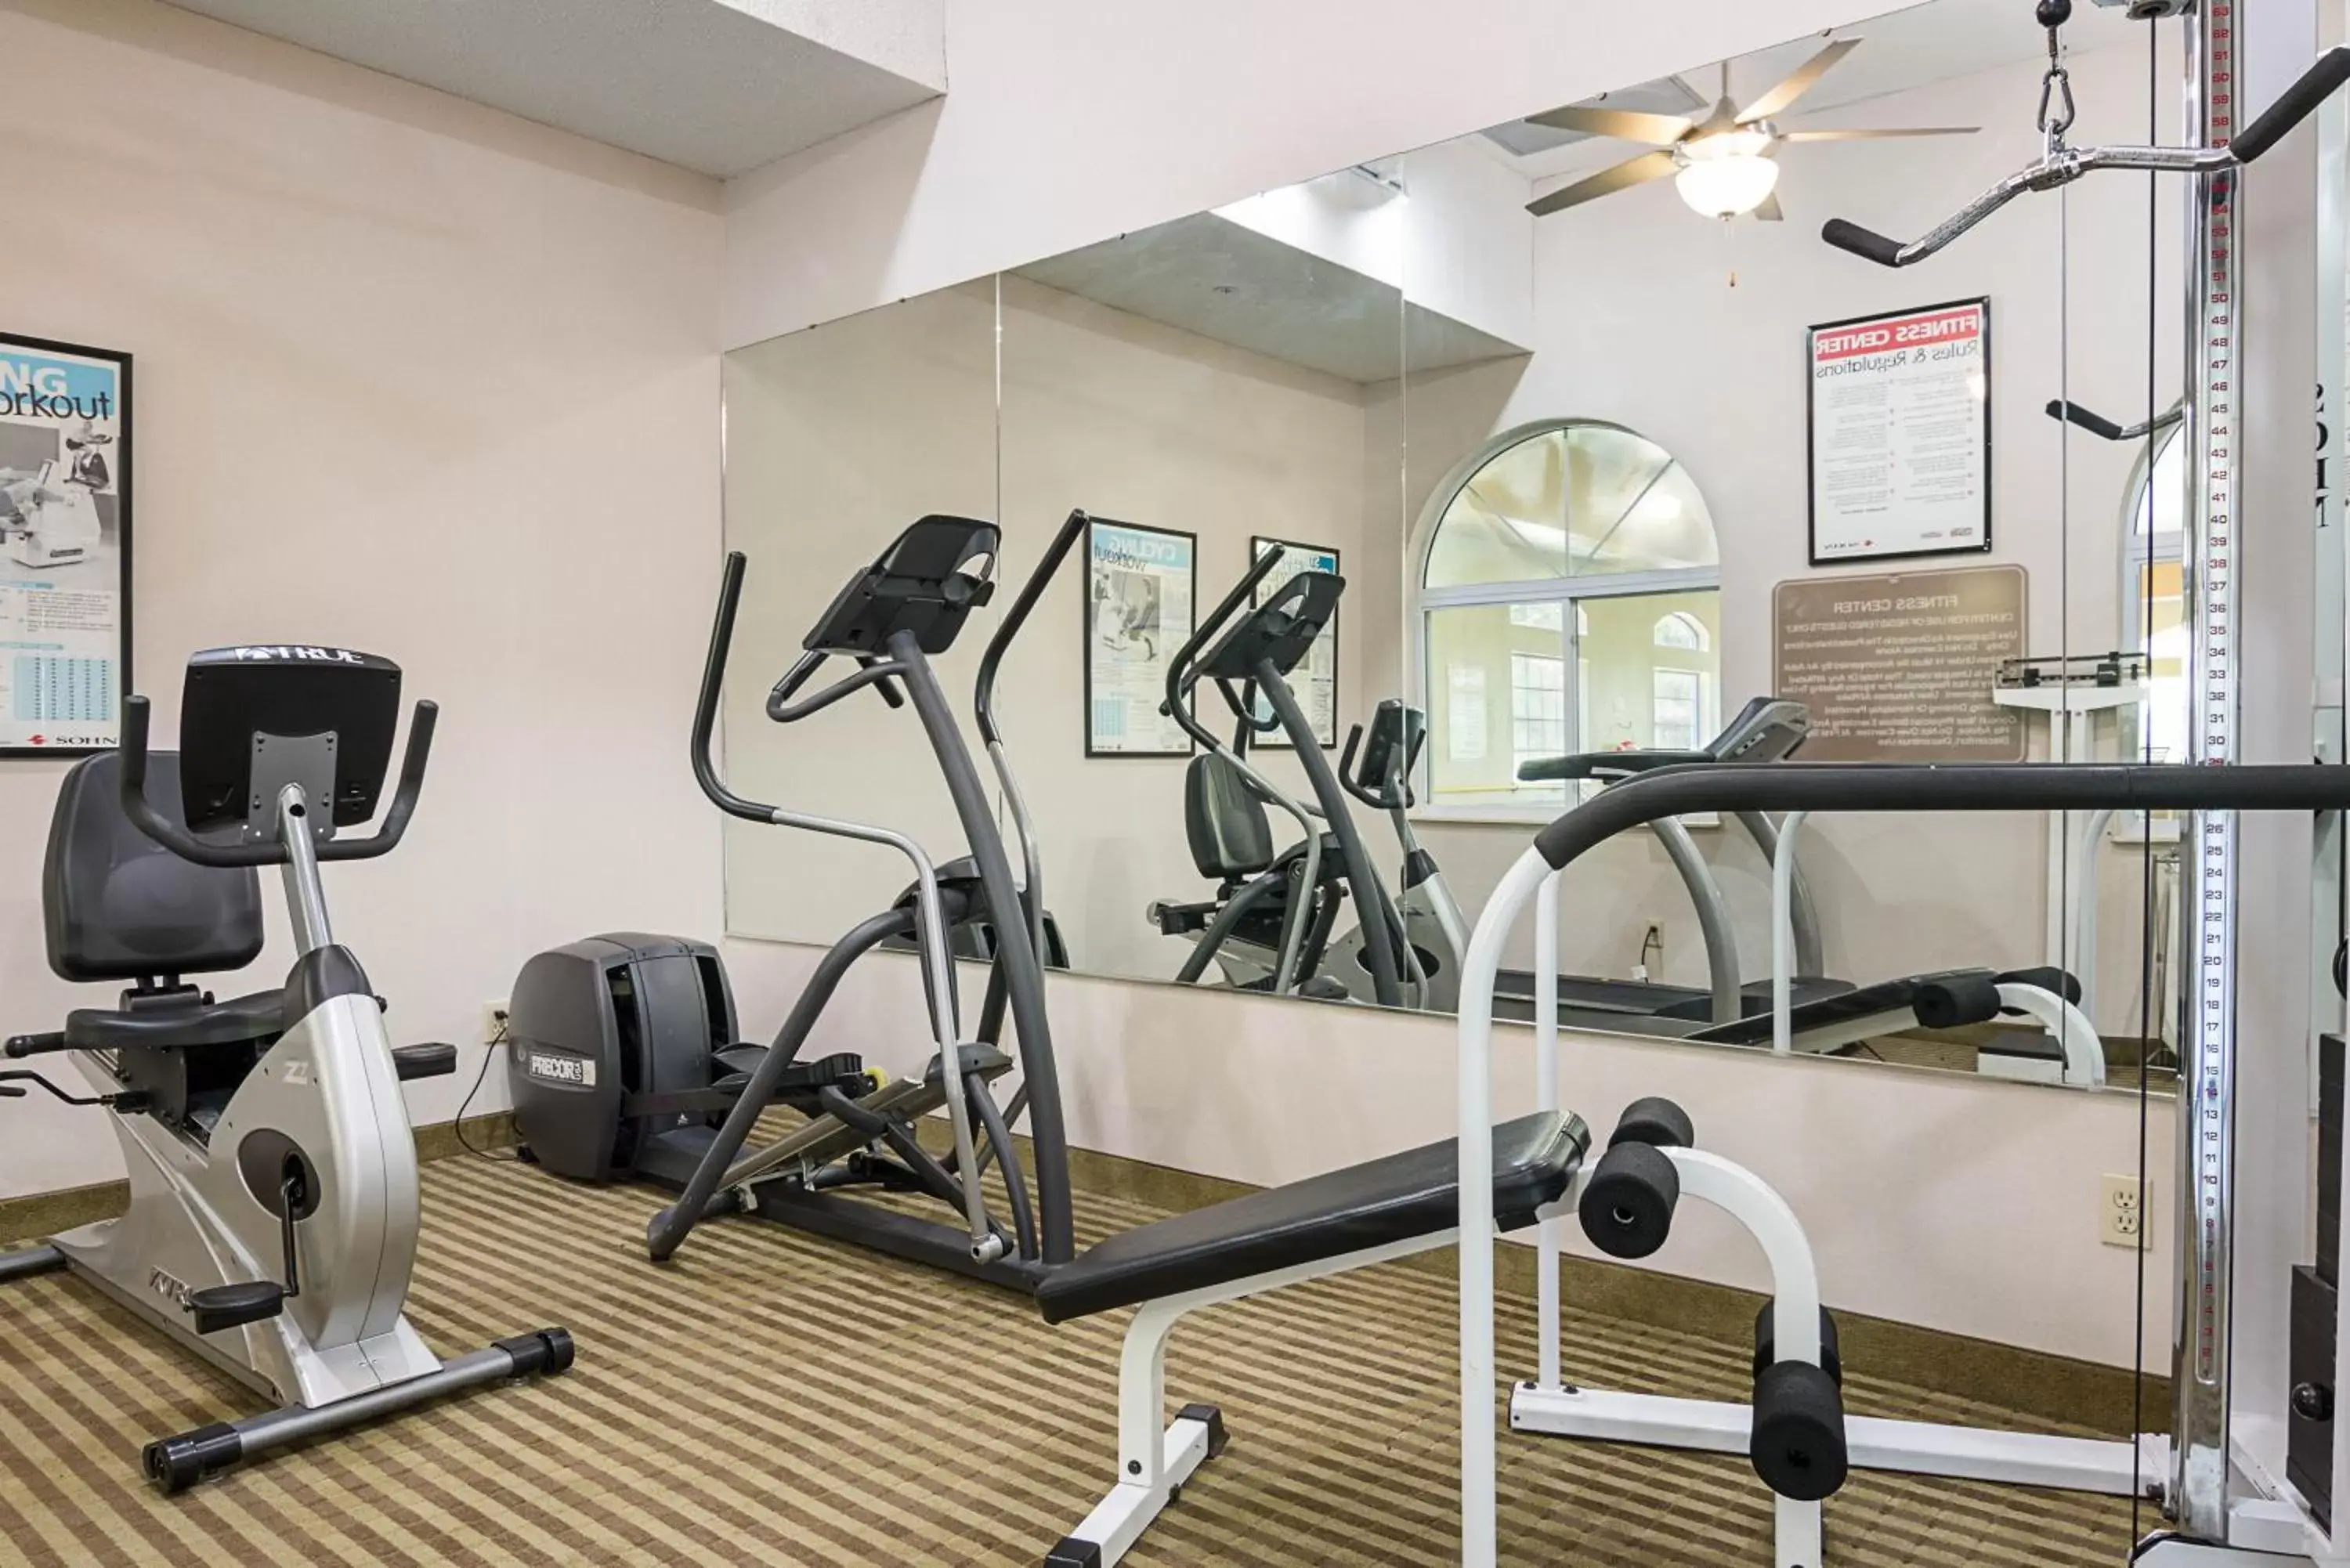 Fitness centre/facilities, Fitness Center/Facilities in Comfort Inn Camden